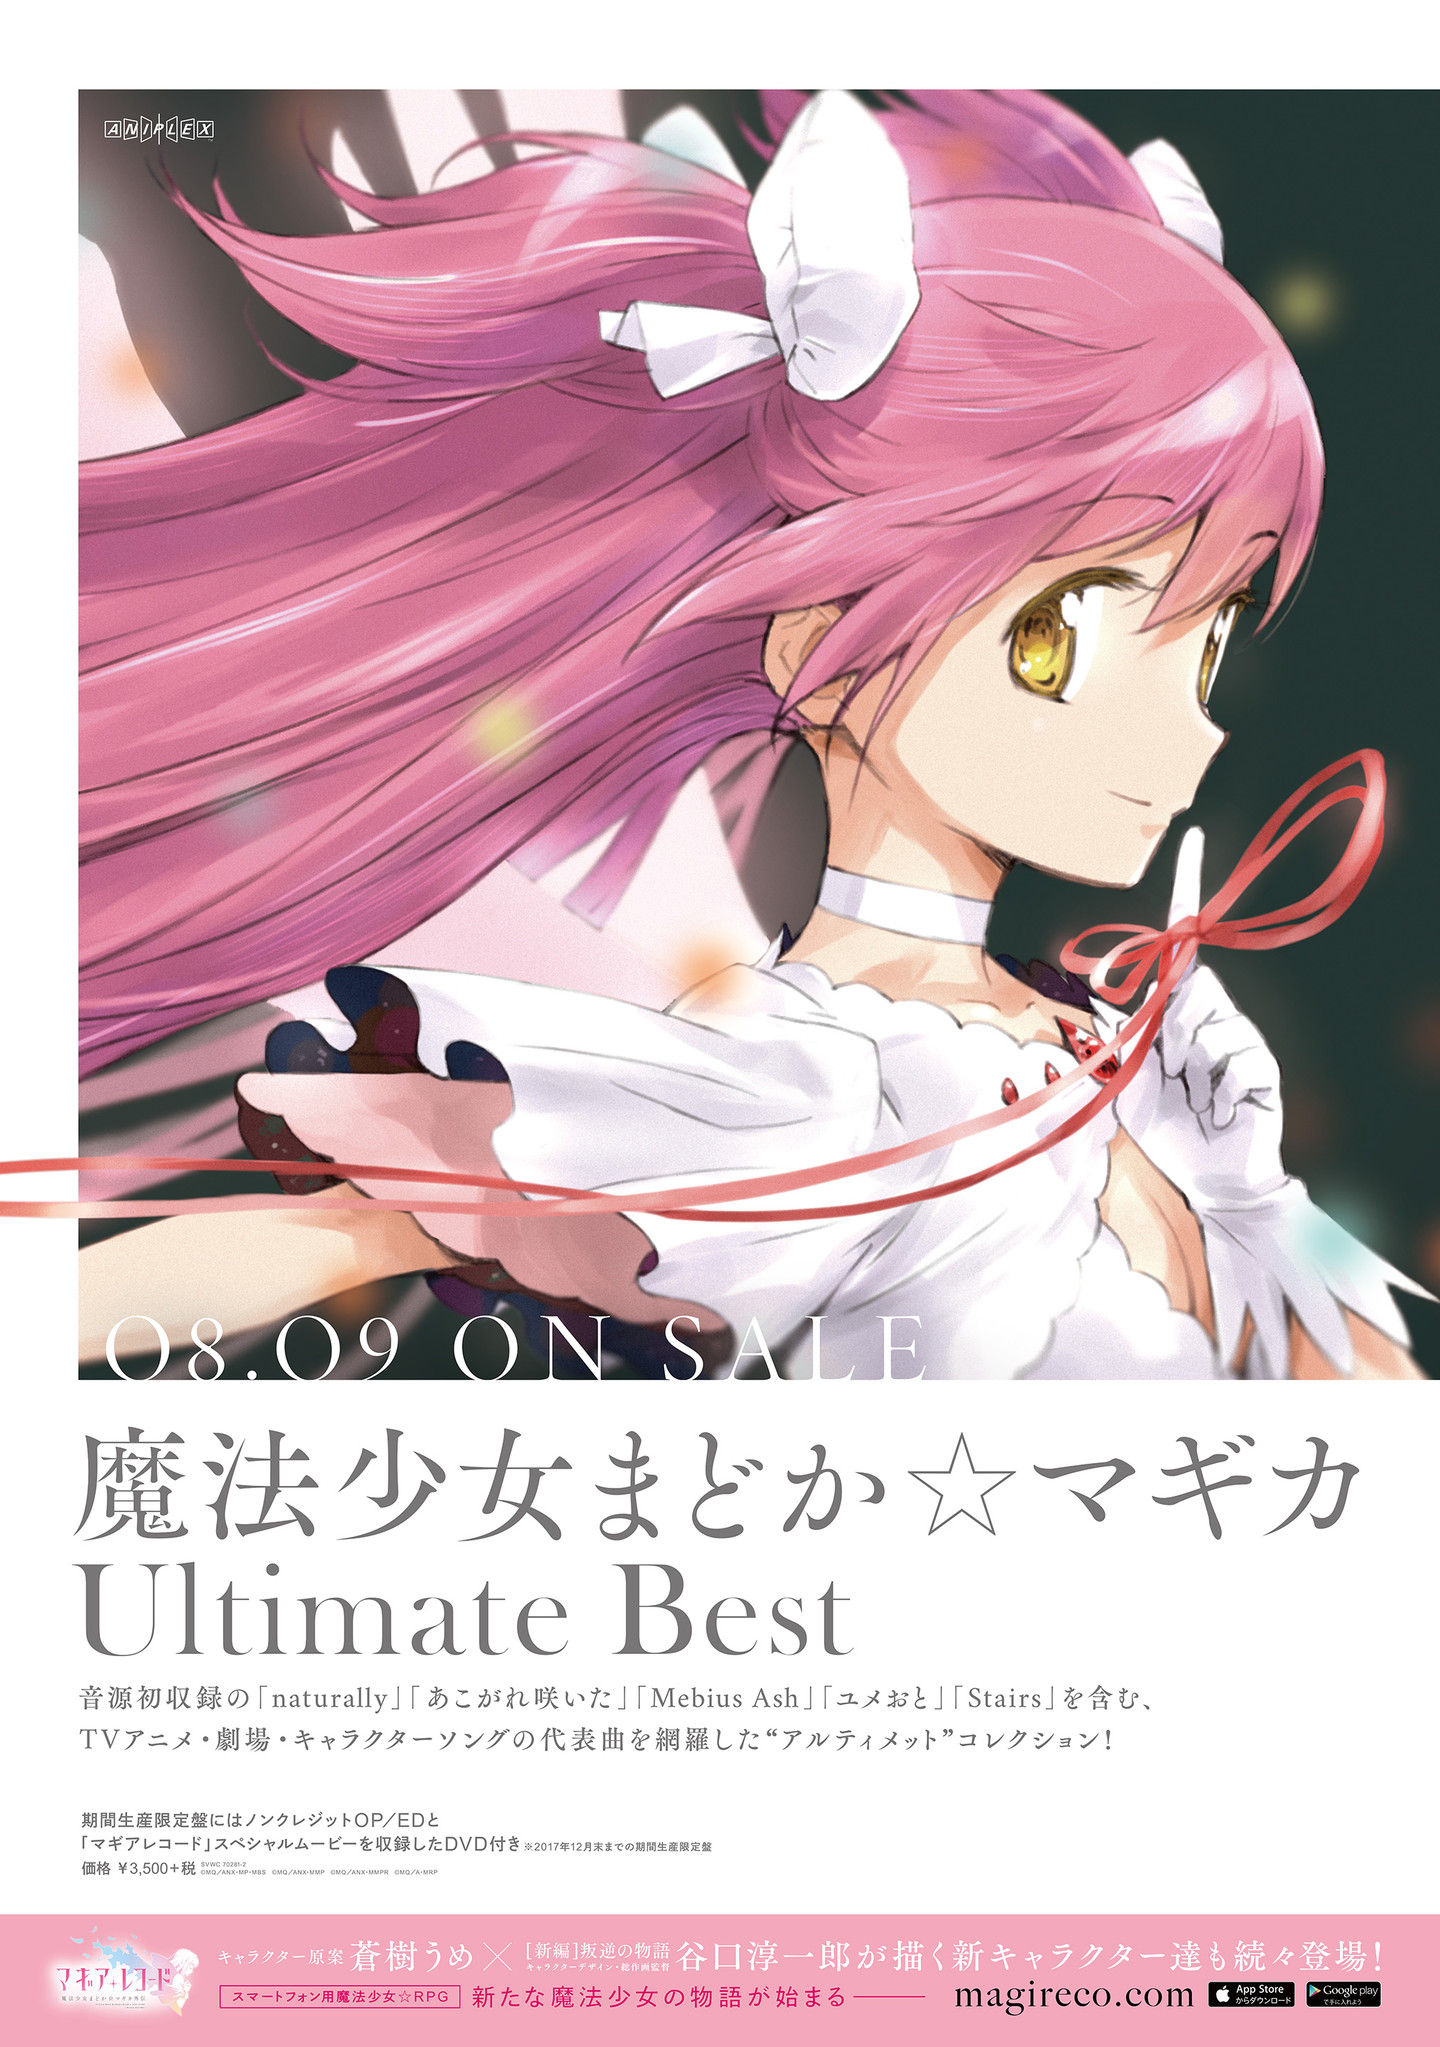 魔法少女まどか☆マギカ Ultimate Best アナログレコードCD・DVD 